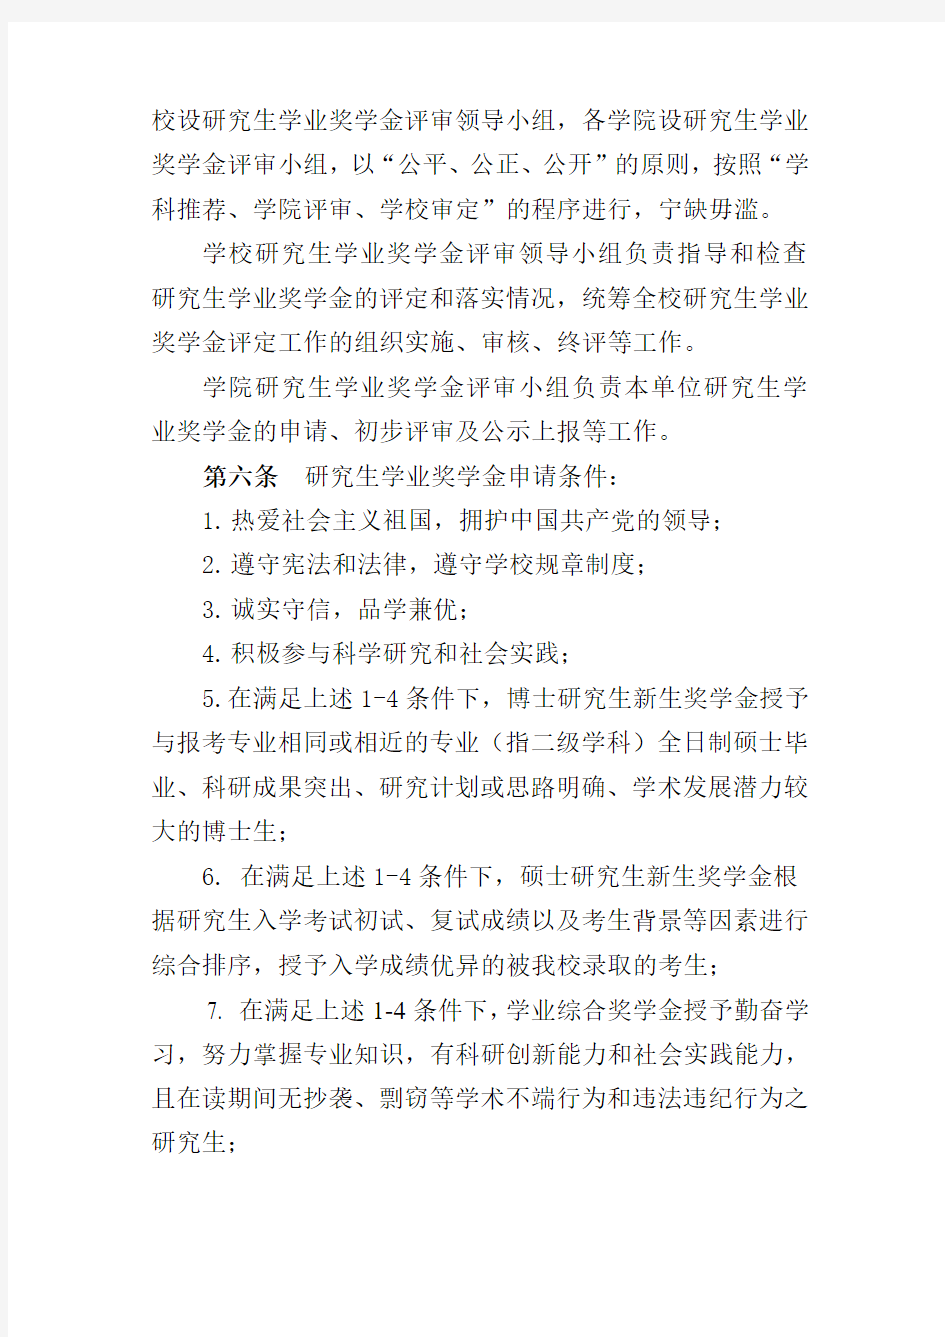 上海海事大学全日制研究生学业奖学金实施办法(修改版)